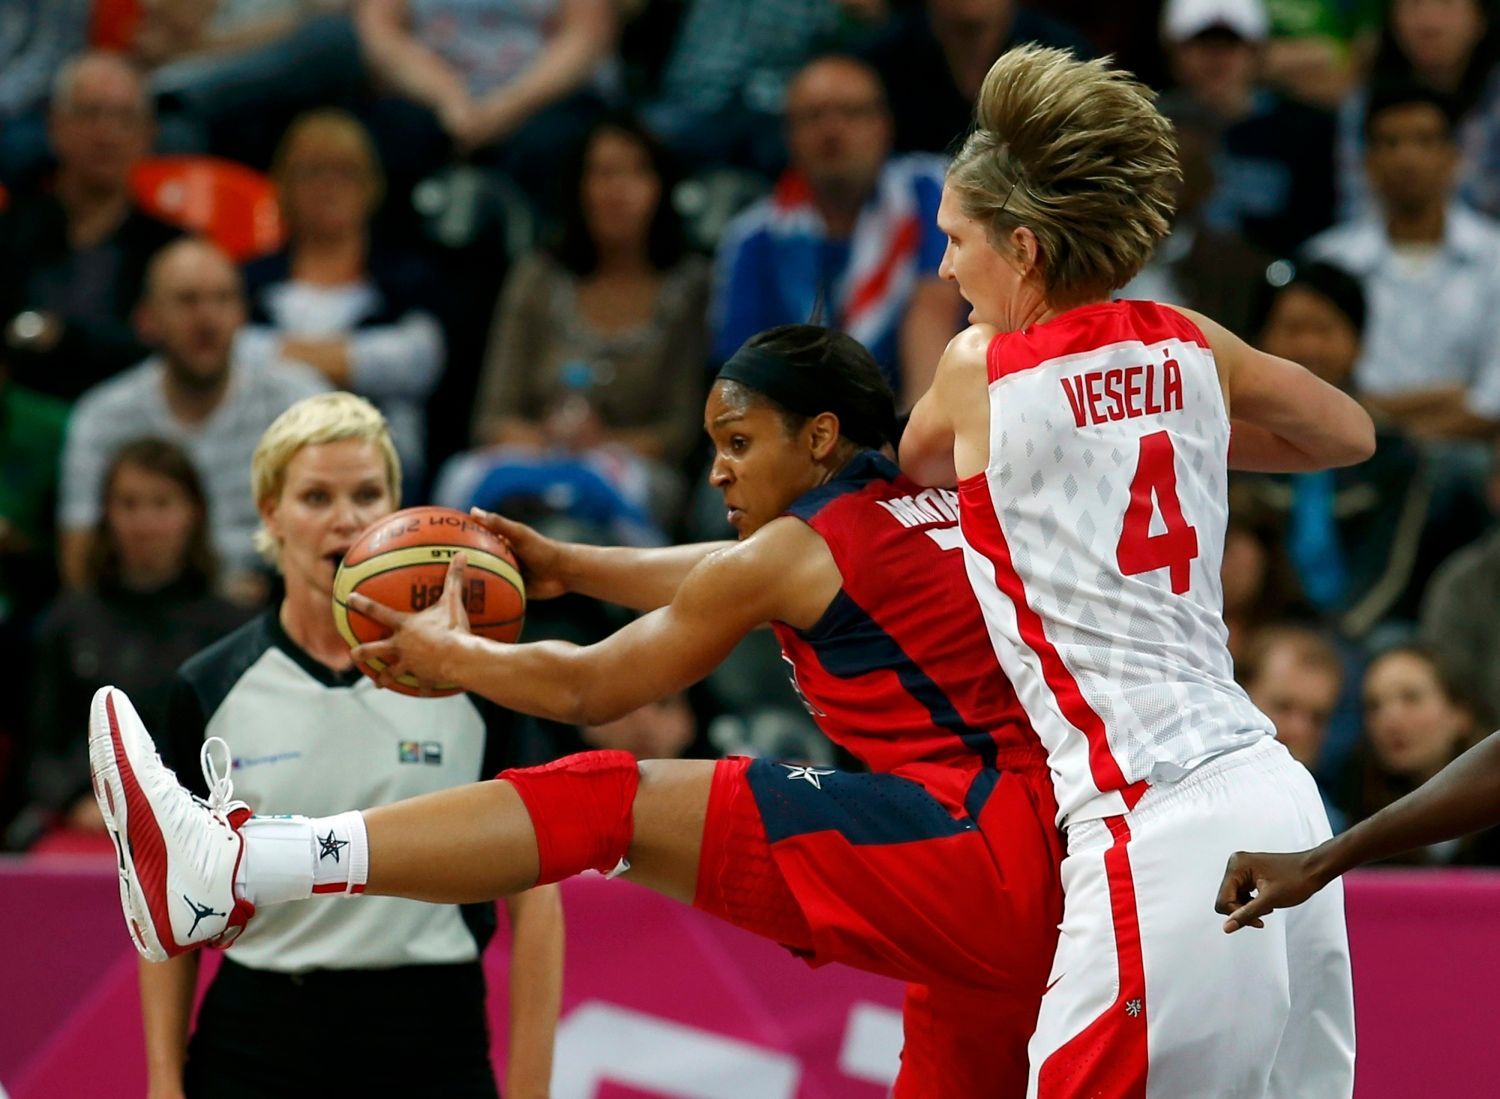 Česká basketbalistka Jana Veselá se snaží bránit Mayu Mooreovou v utkání skupiny A na OH 2012 v Londýně.